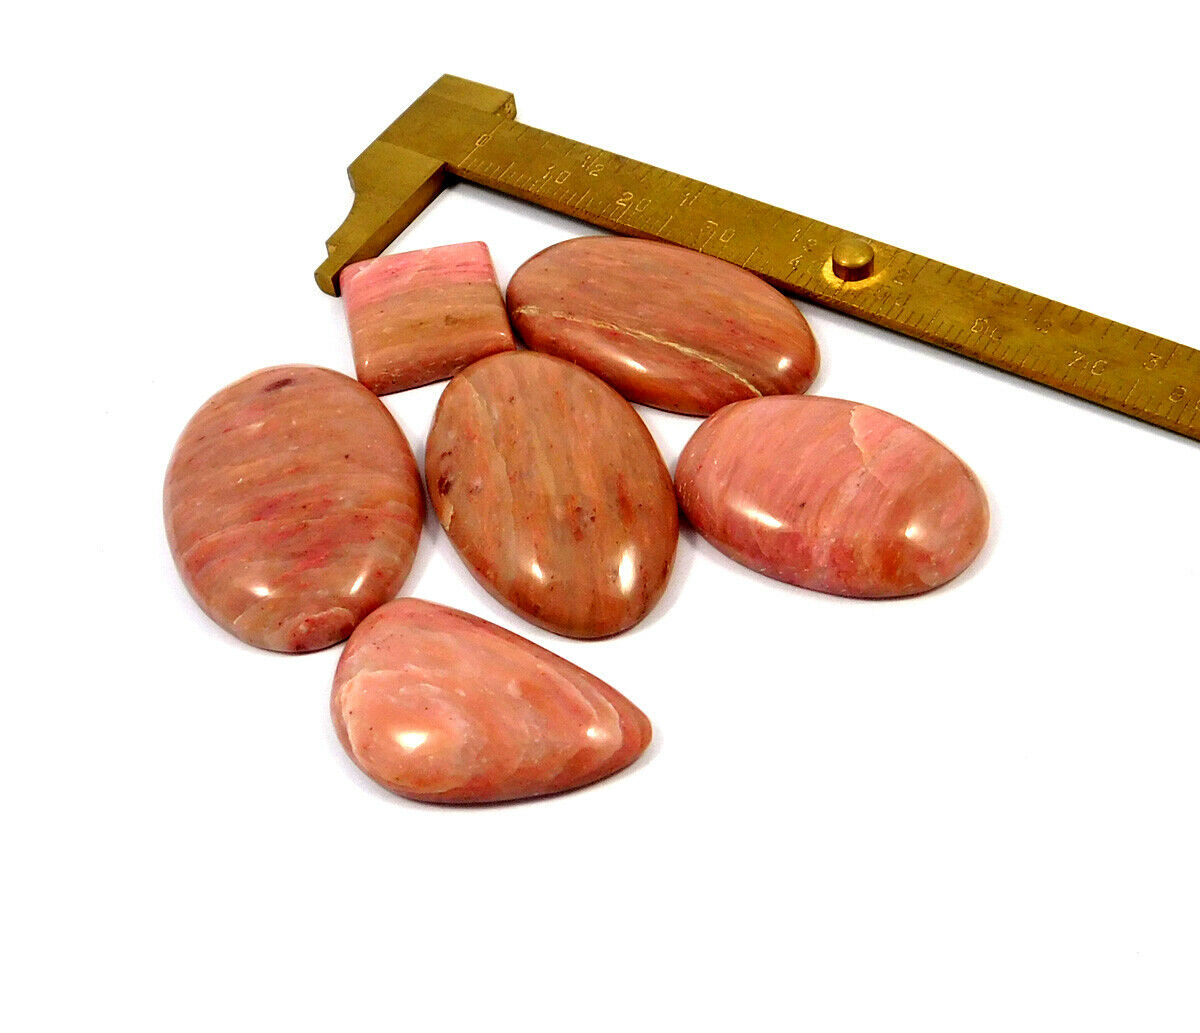 179 Cts. 100% Natural Pink Calcite Mix Lot Loose Cabochon Gemstone Ng22556